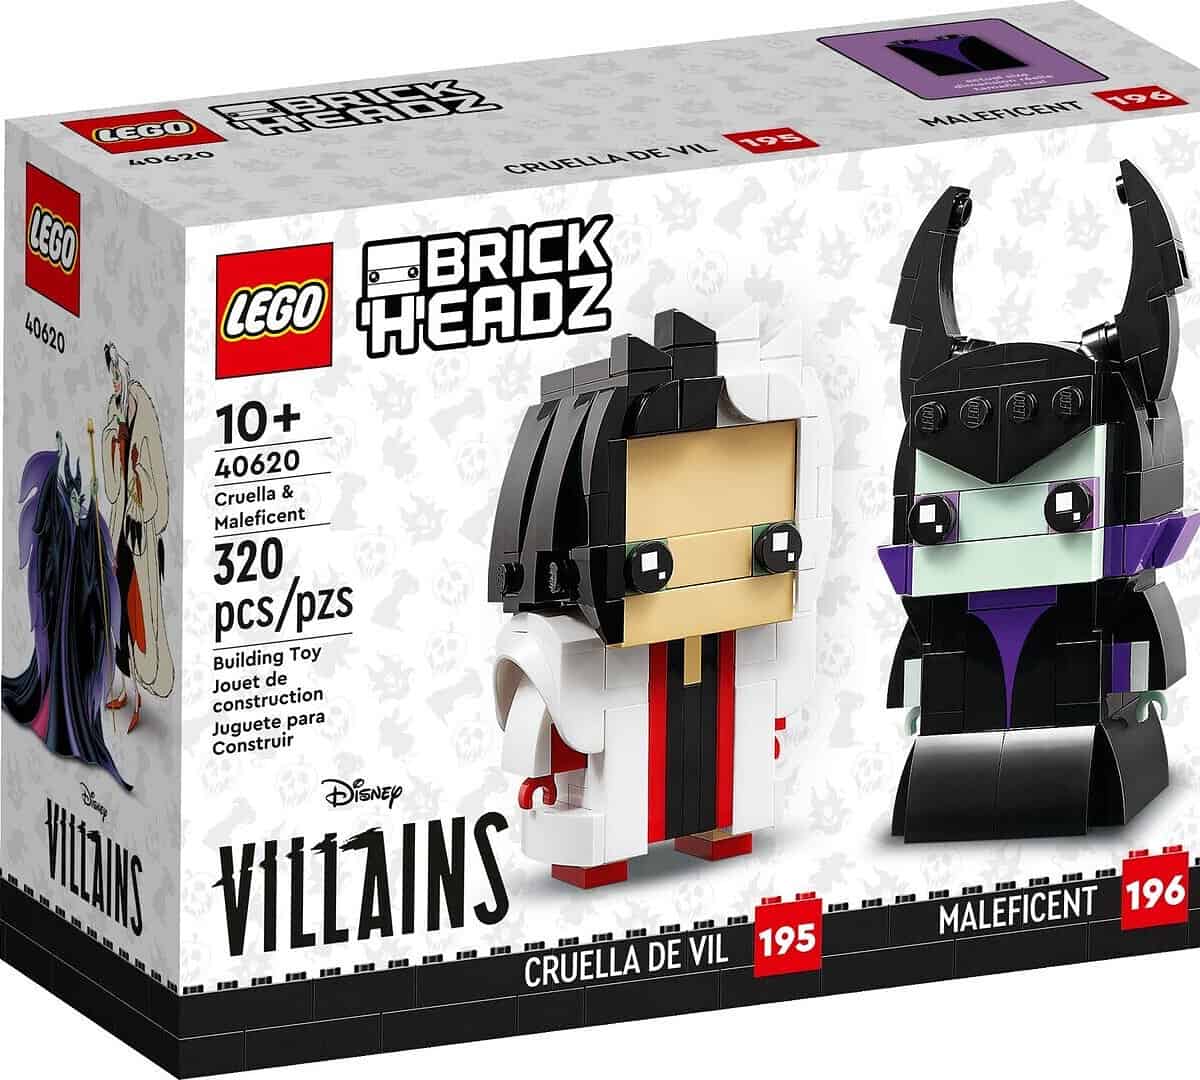 Lego Brick Headz Cruella Und Maleficent